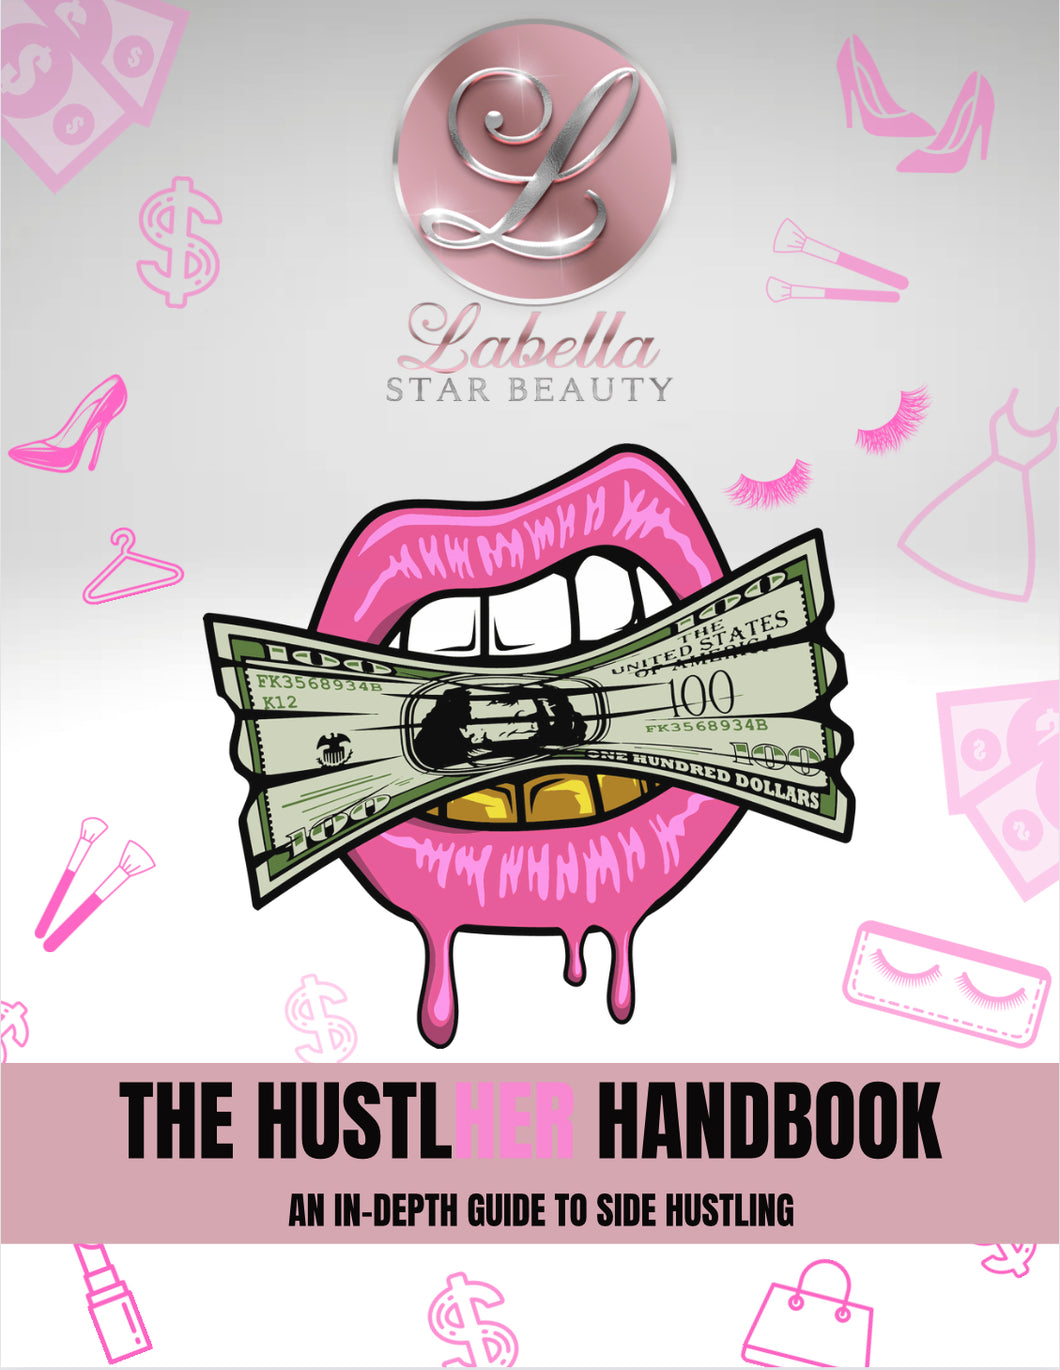 The HustlHer Handbook